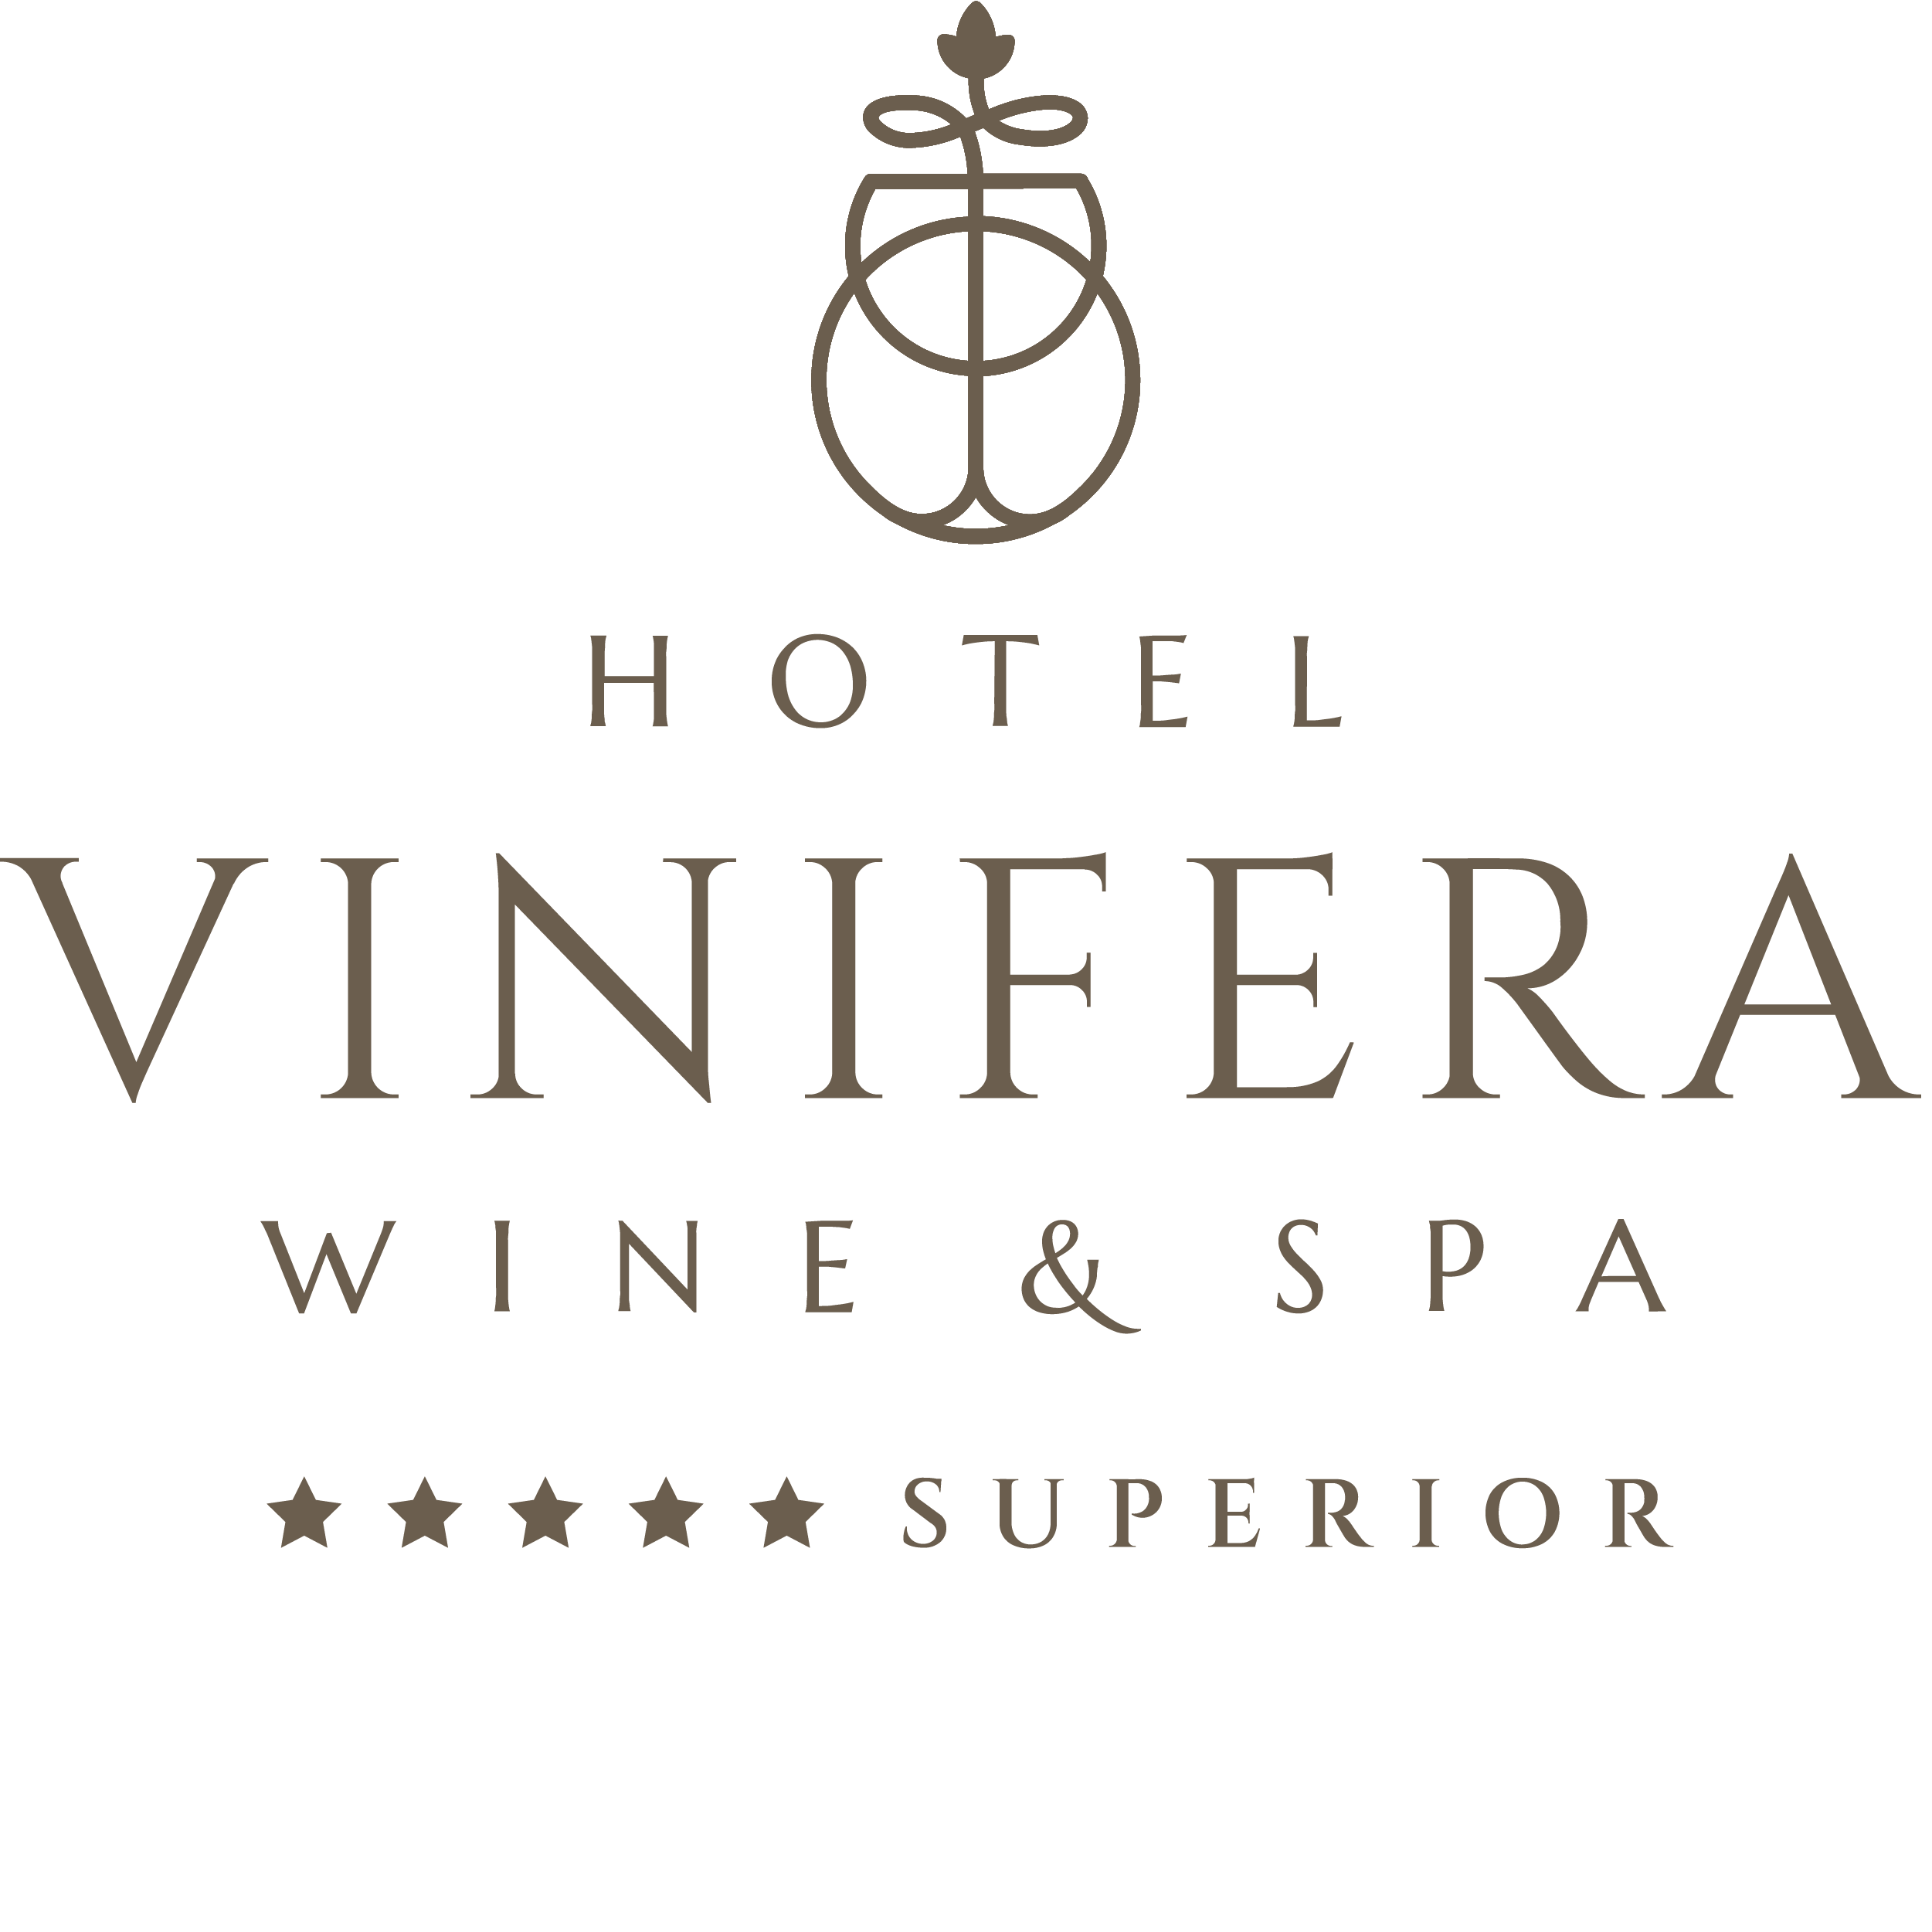 Hotel Vinifera Wine & Spa *****, Spa by ADRIENNE FELLER